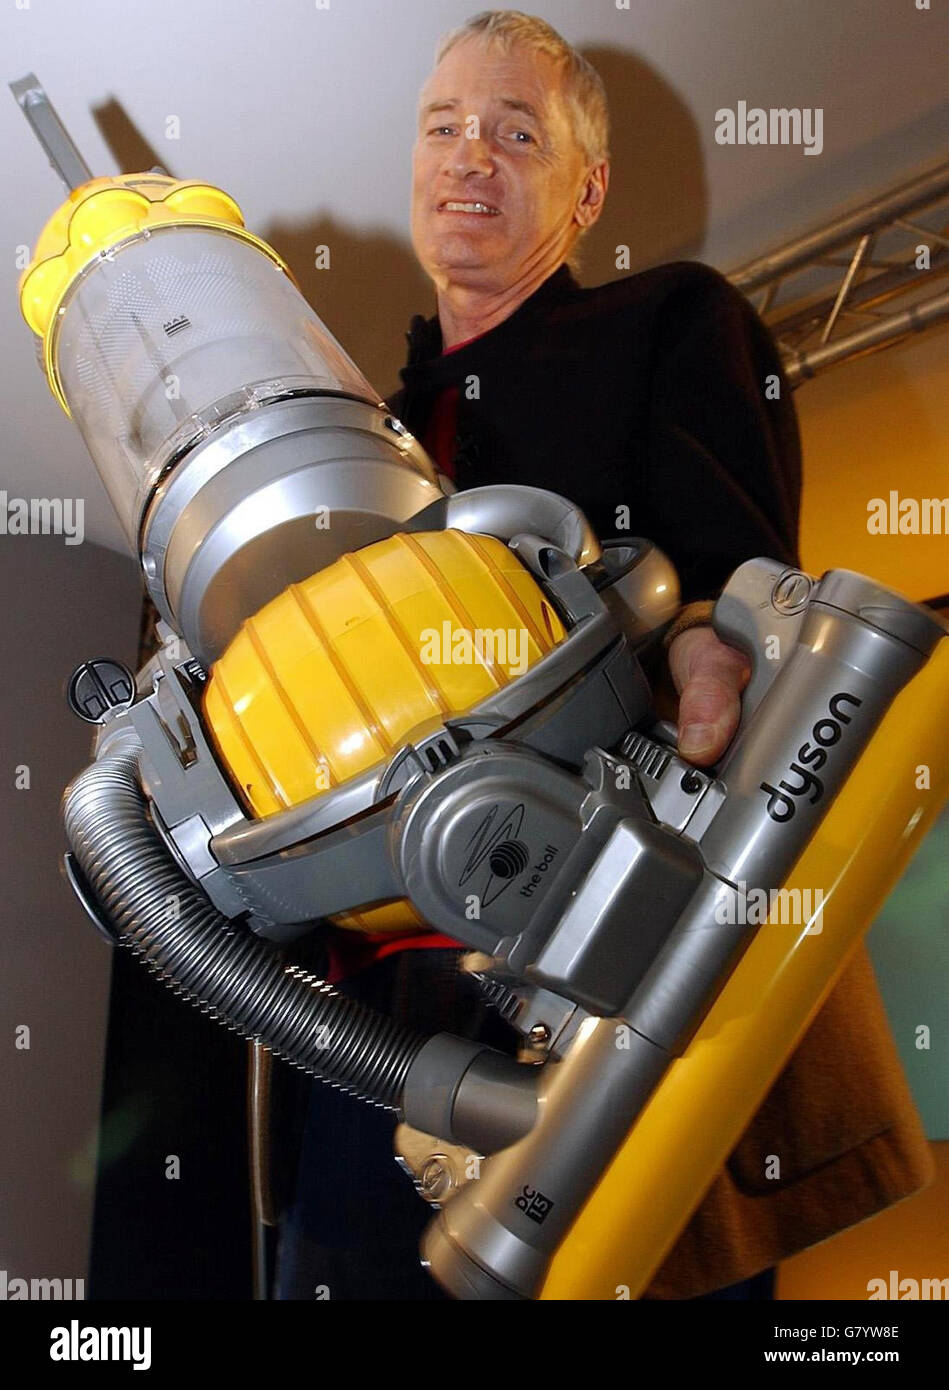 L'inventeur britannique James Dyson avec son nouvel aspirateur Dyson ball  lors du lancement du produit Photo Stock - Alamy